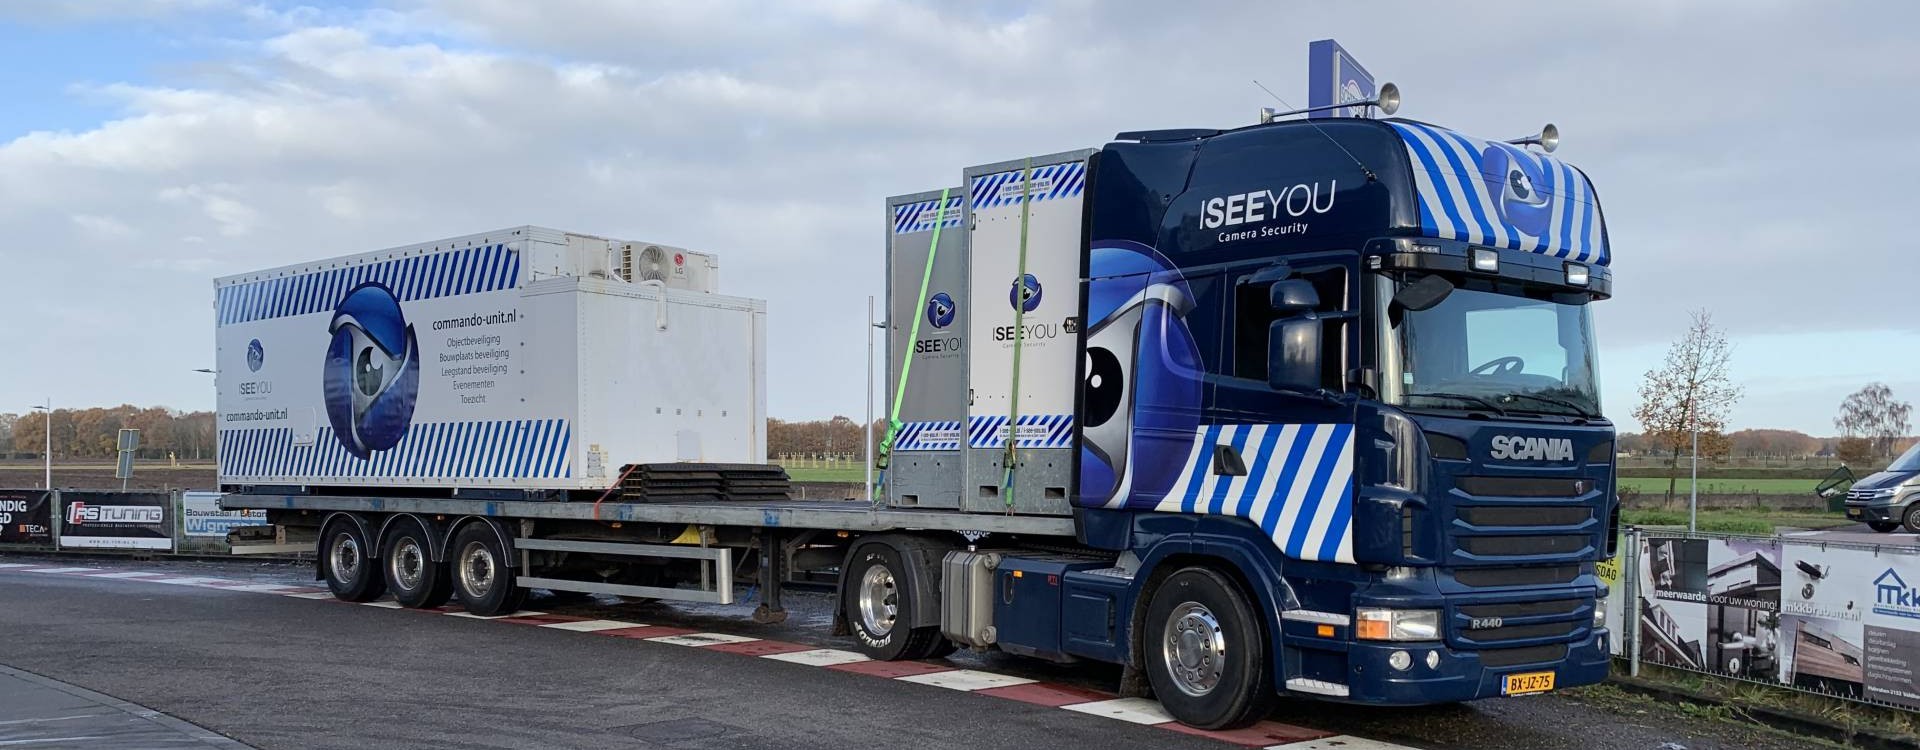 I-See-You mobiele camera-beveiliging apparatuur op Scania vrachtwagen